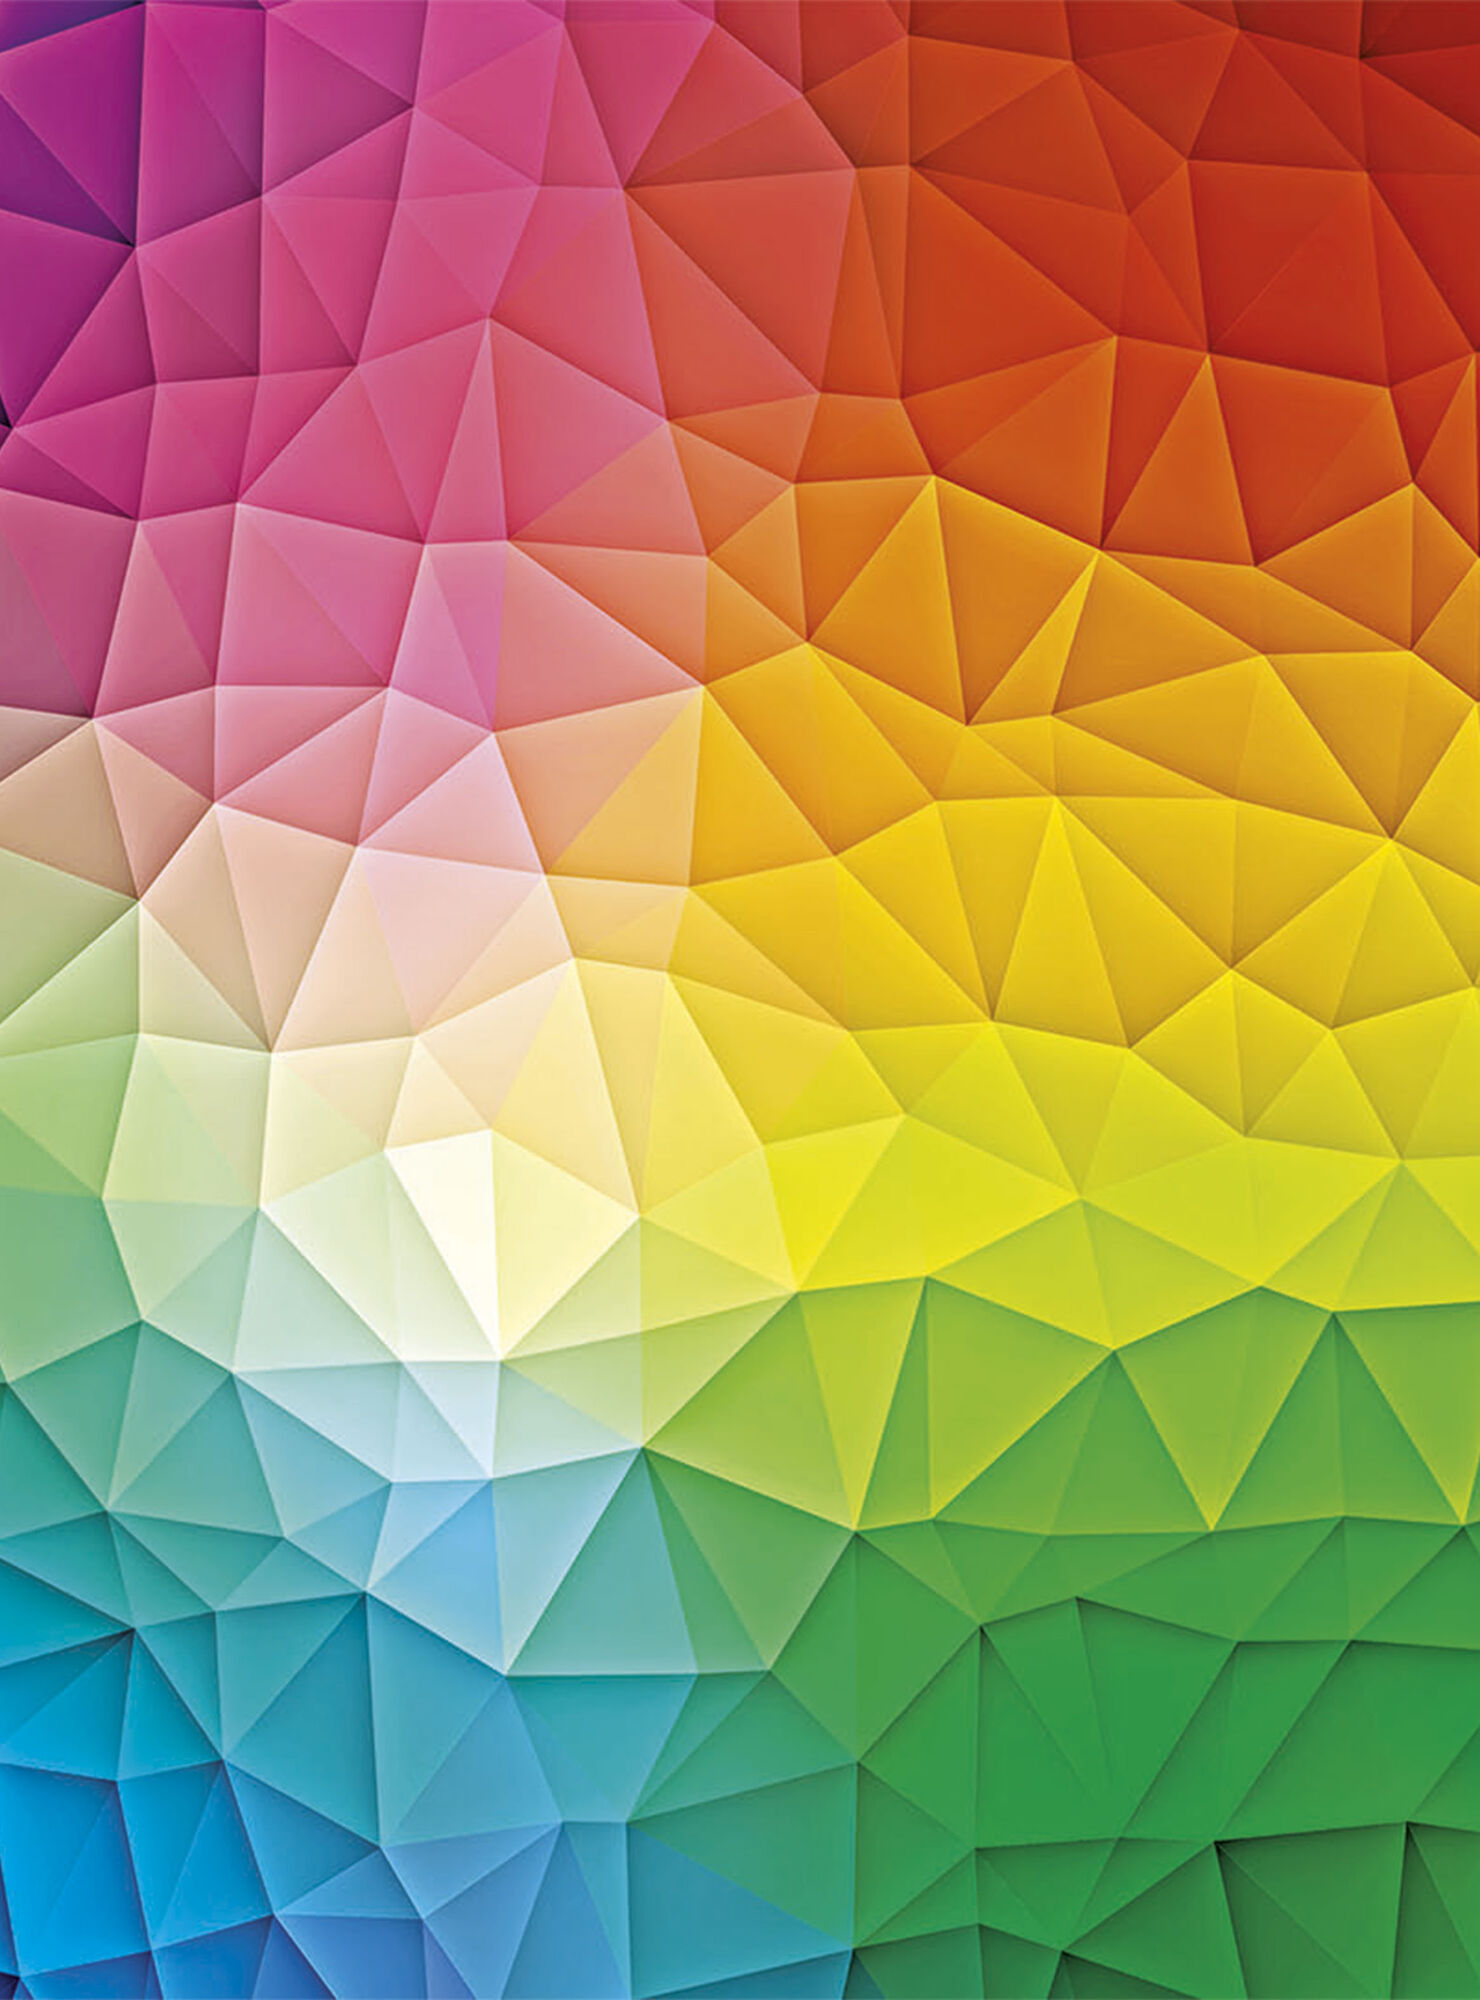 Puzzle 1000 Piezas Mosaico Colores 